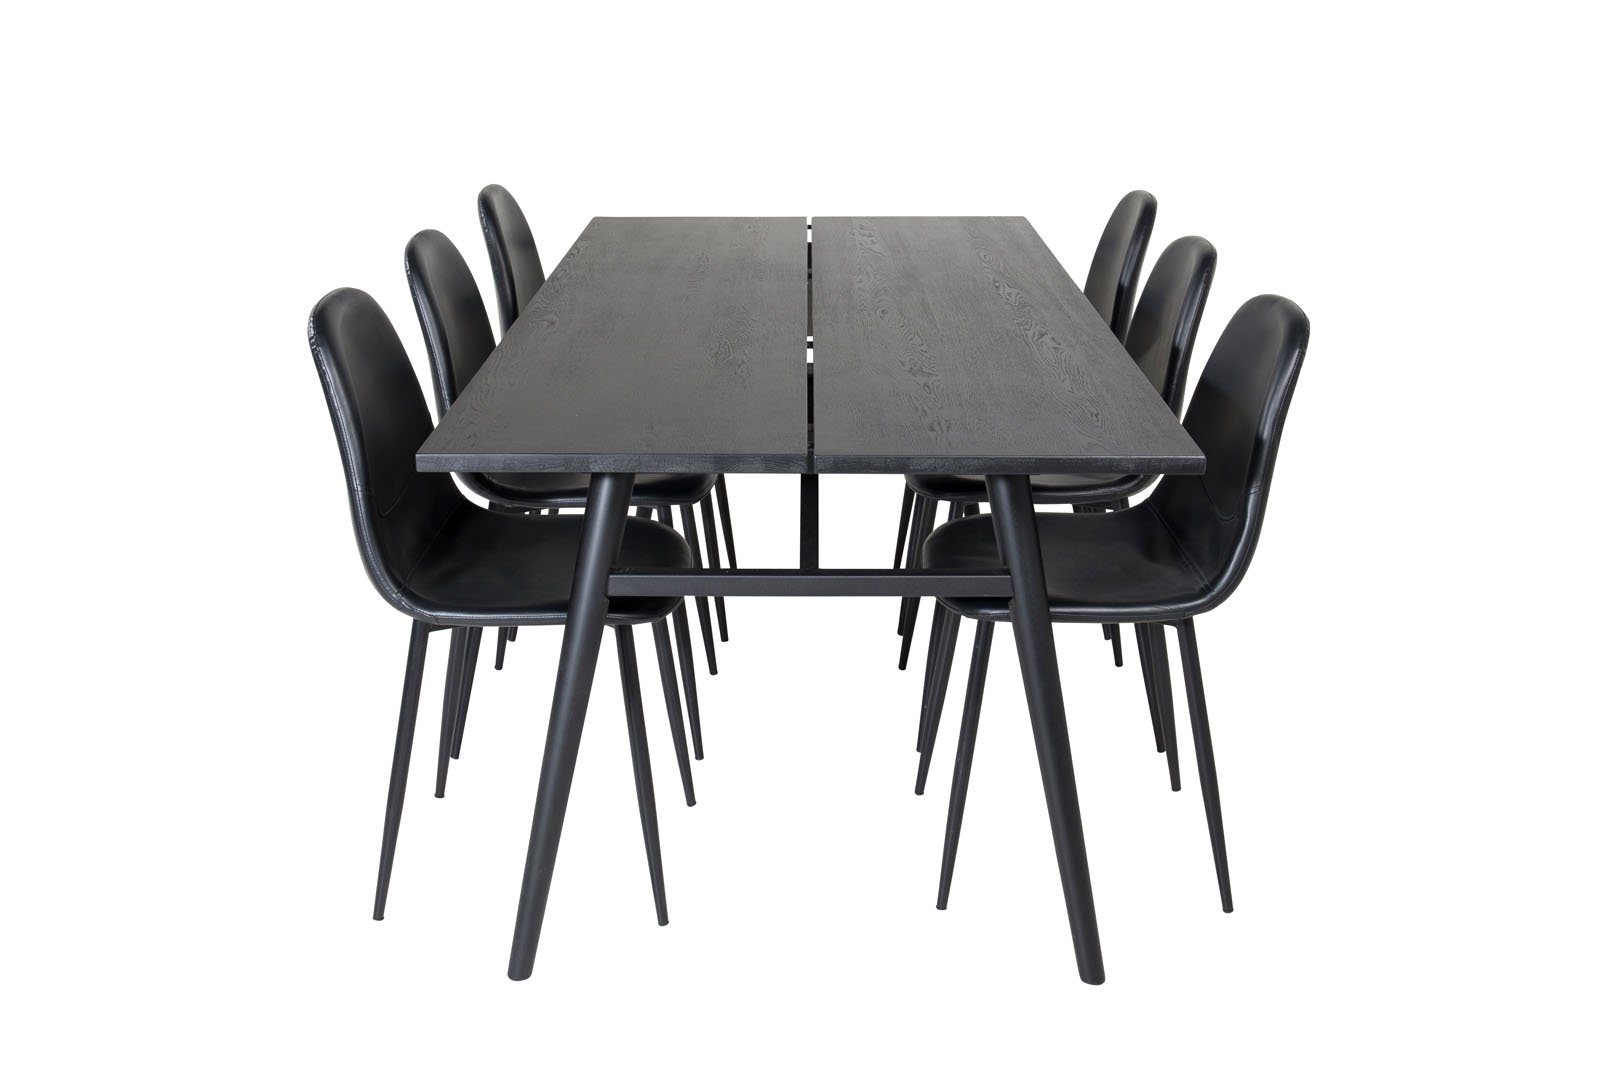 Lä, Essgruppe Essgruppe Tisch Sleek ebuy24 ausziehbarer schwarz;schwarzPUKunstleder Esstisch (7-tlg)